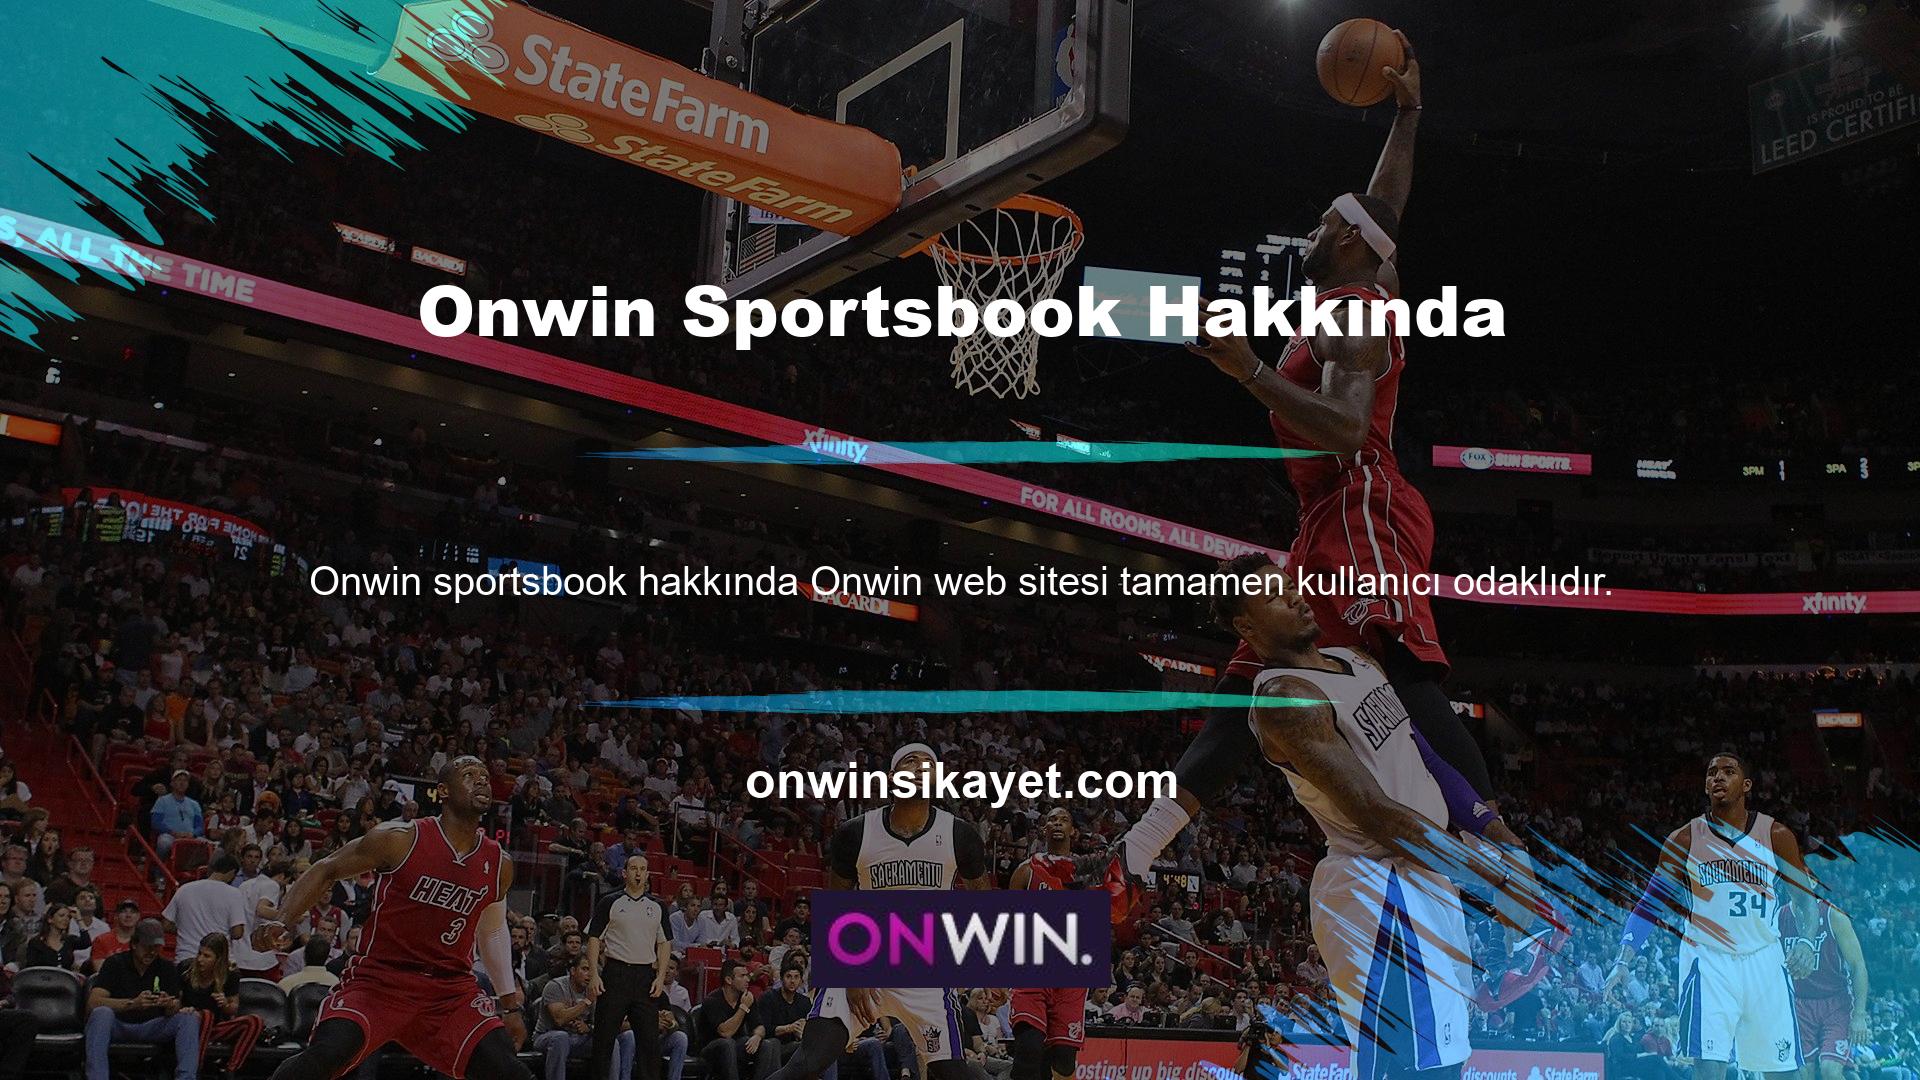 Bu nedenle Onwin, web sitesinde spor bahisleri, slotlar ve diğer alanlara odaklanmaktadır